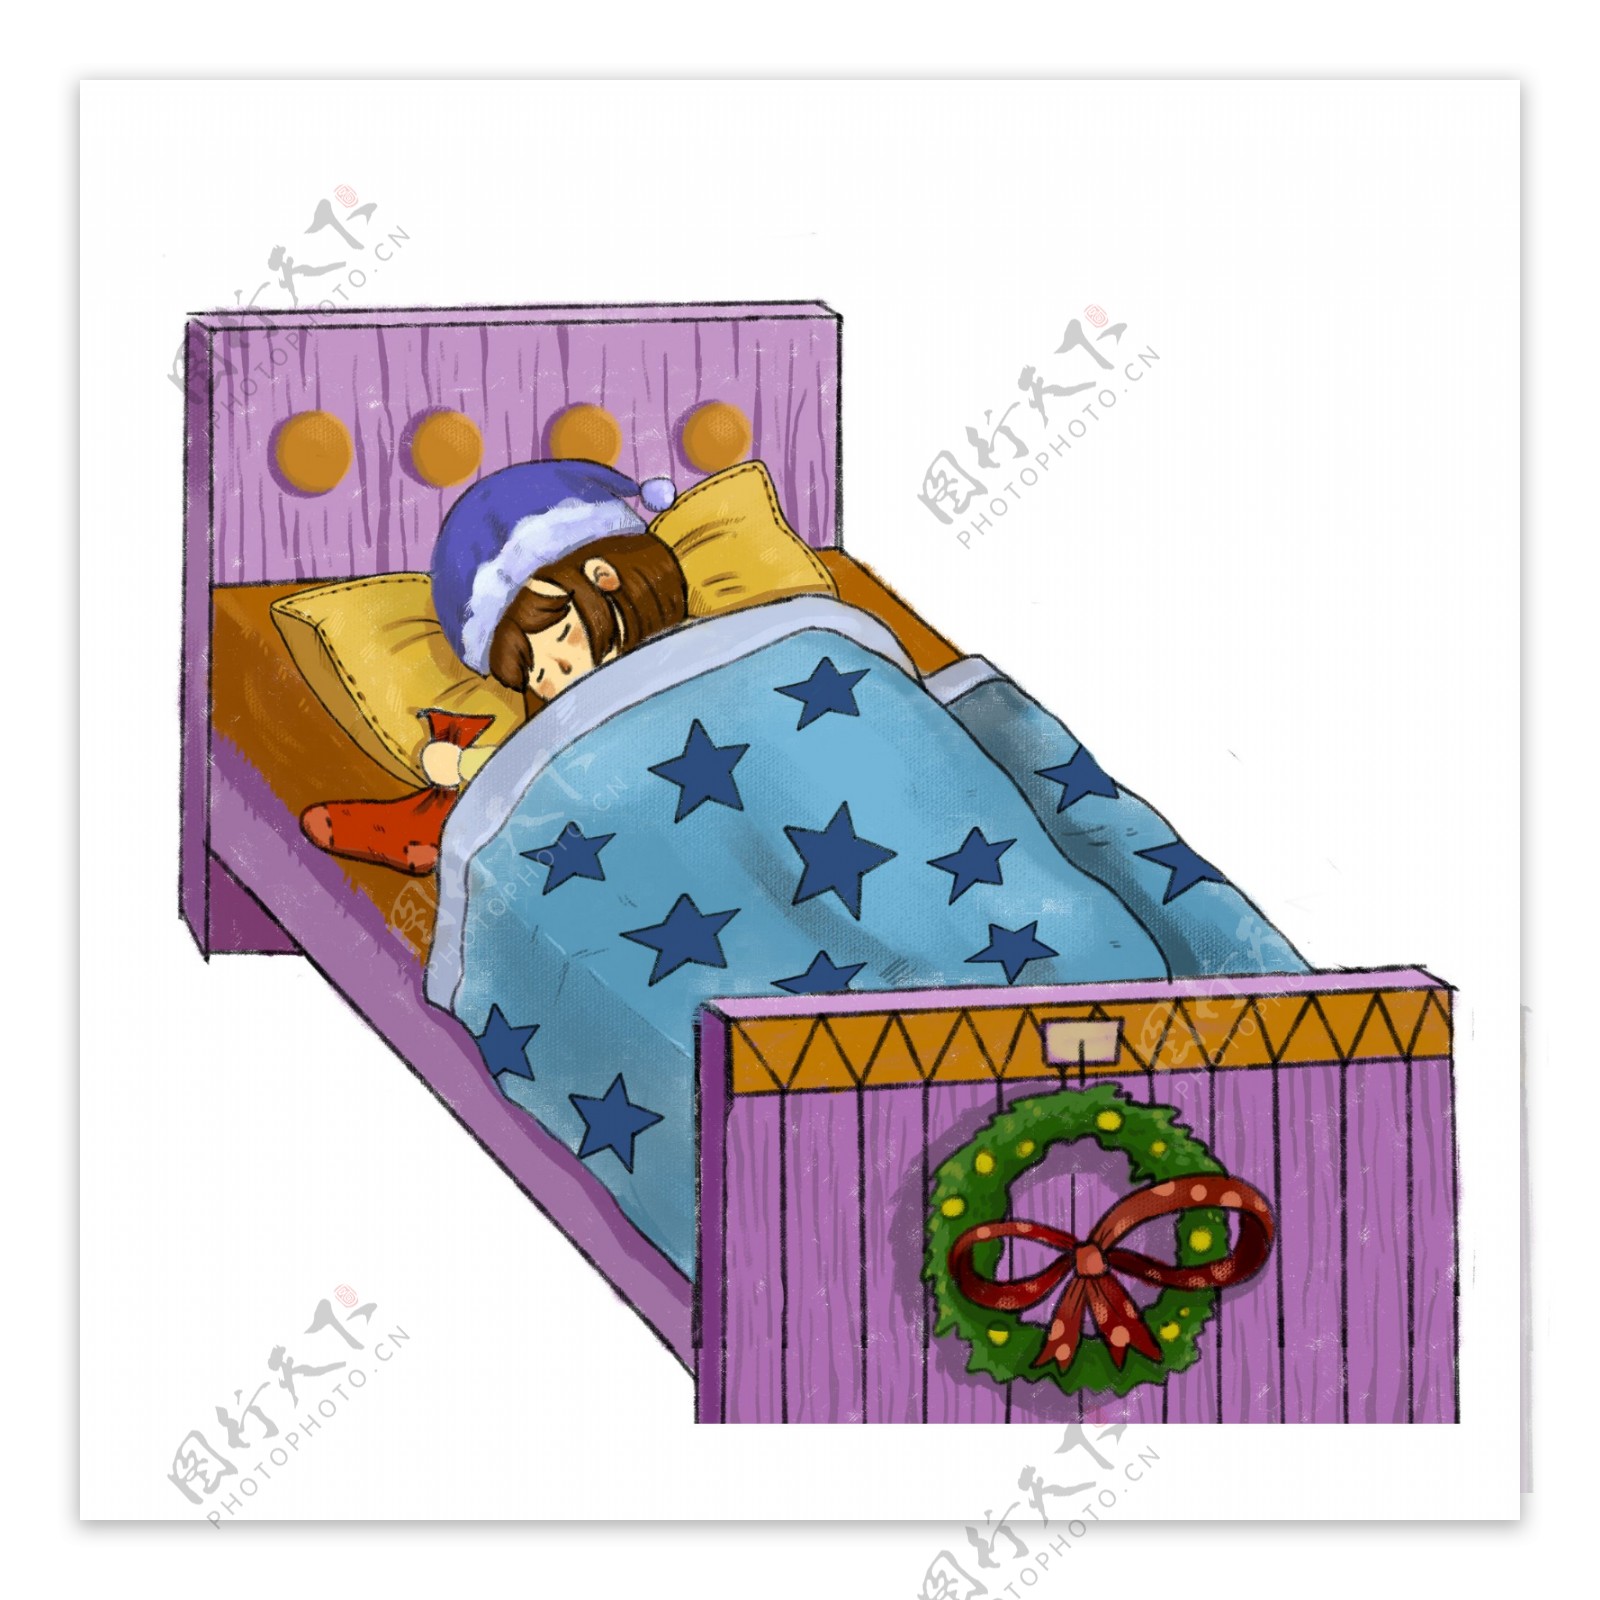 彩绘圣诞节床上睡觉的女孩设计